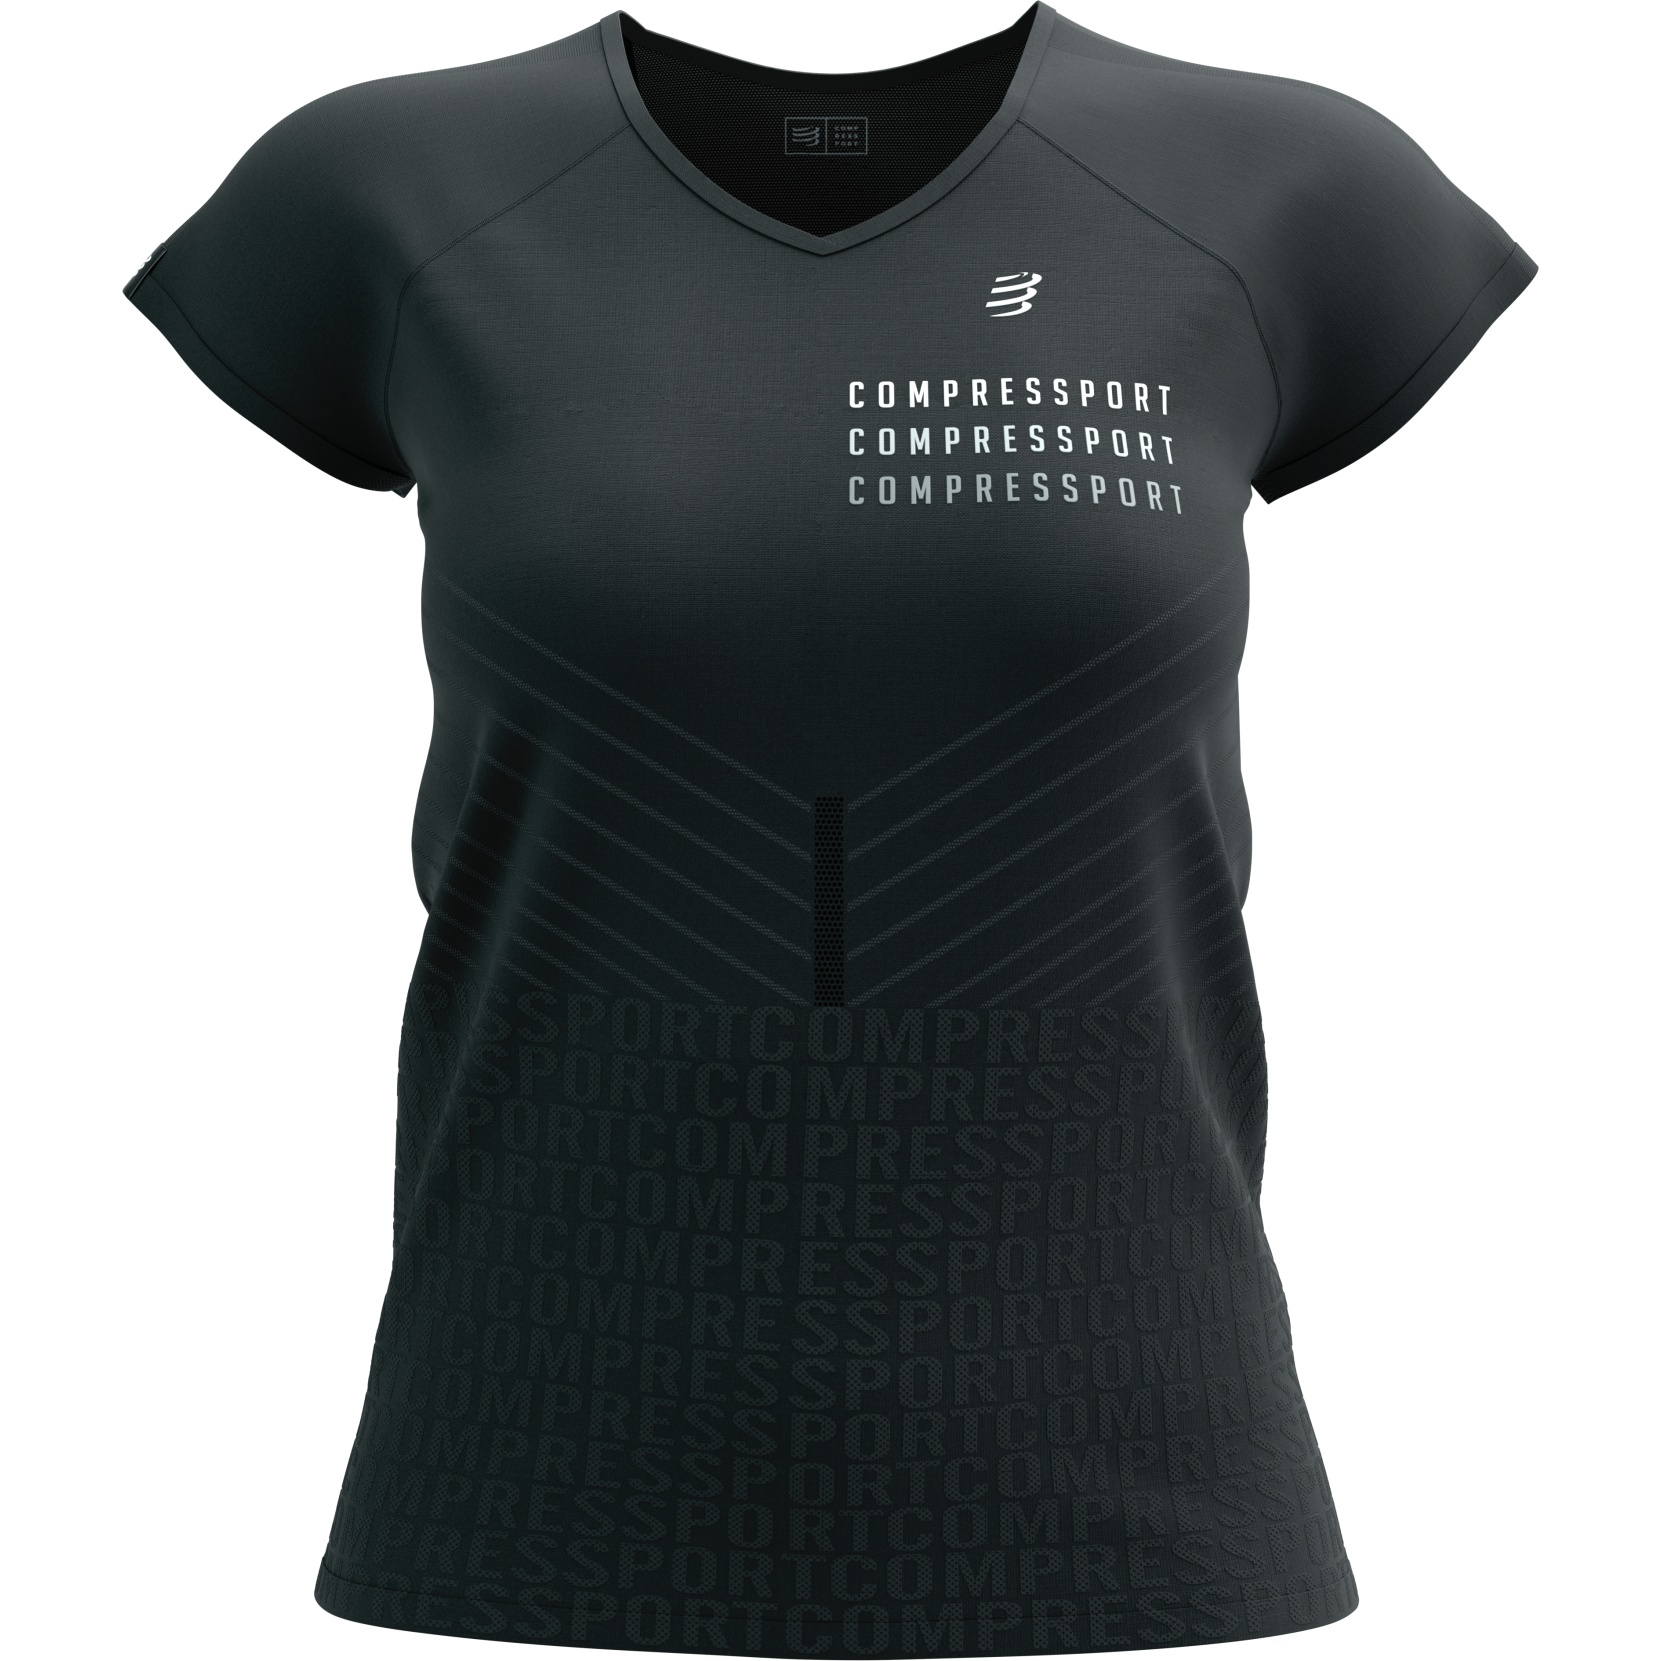 Produktbild von Compressport Performance T-Shirt Damen - Black Edition 2023 - schwarz/weiß